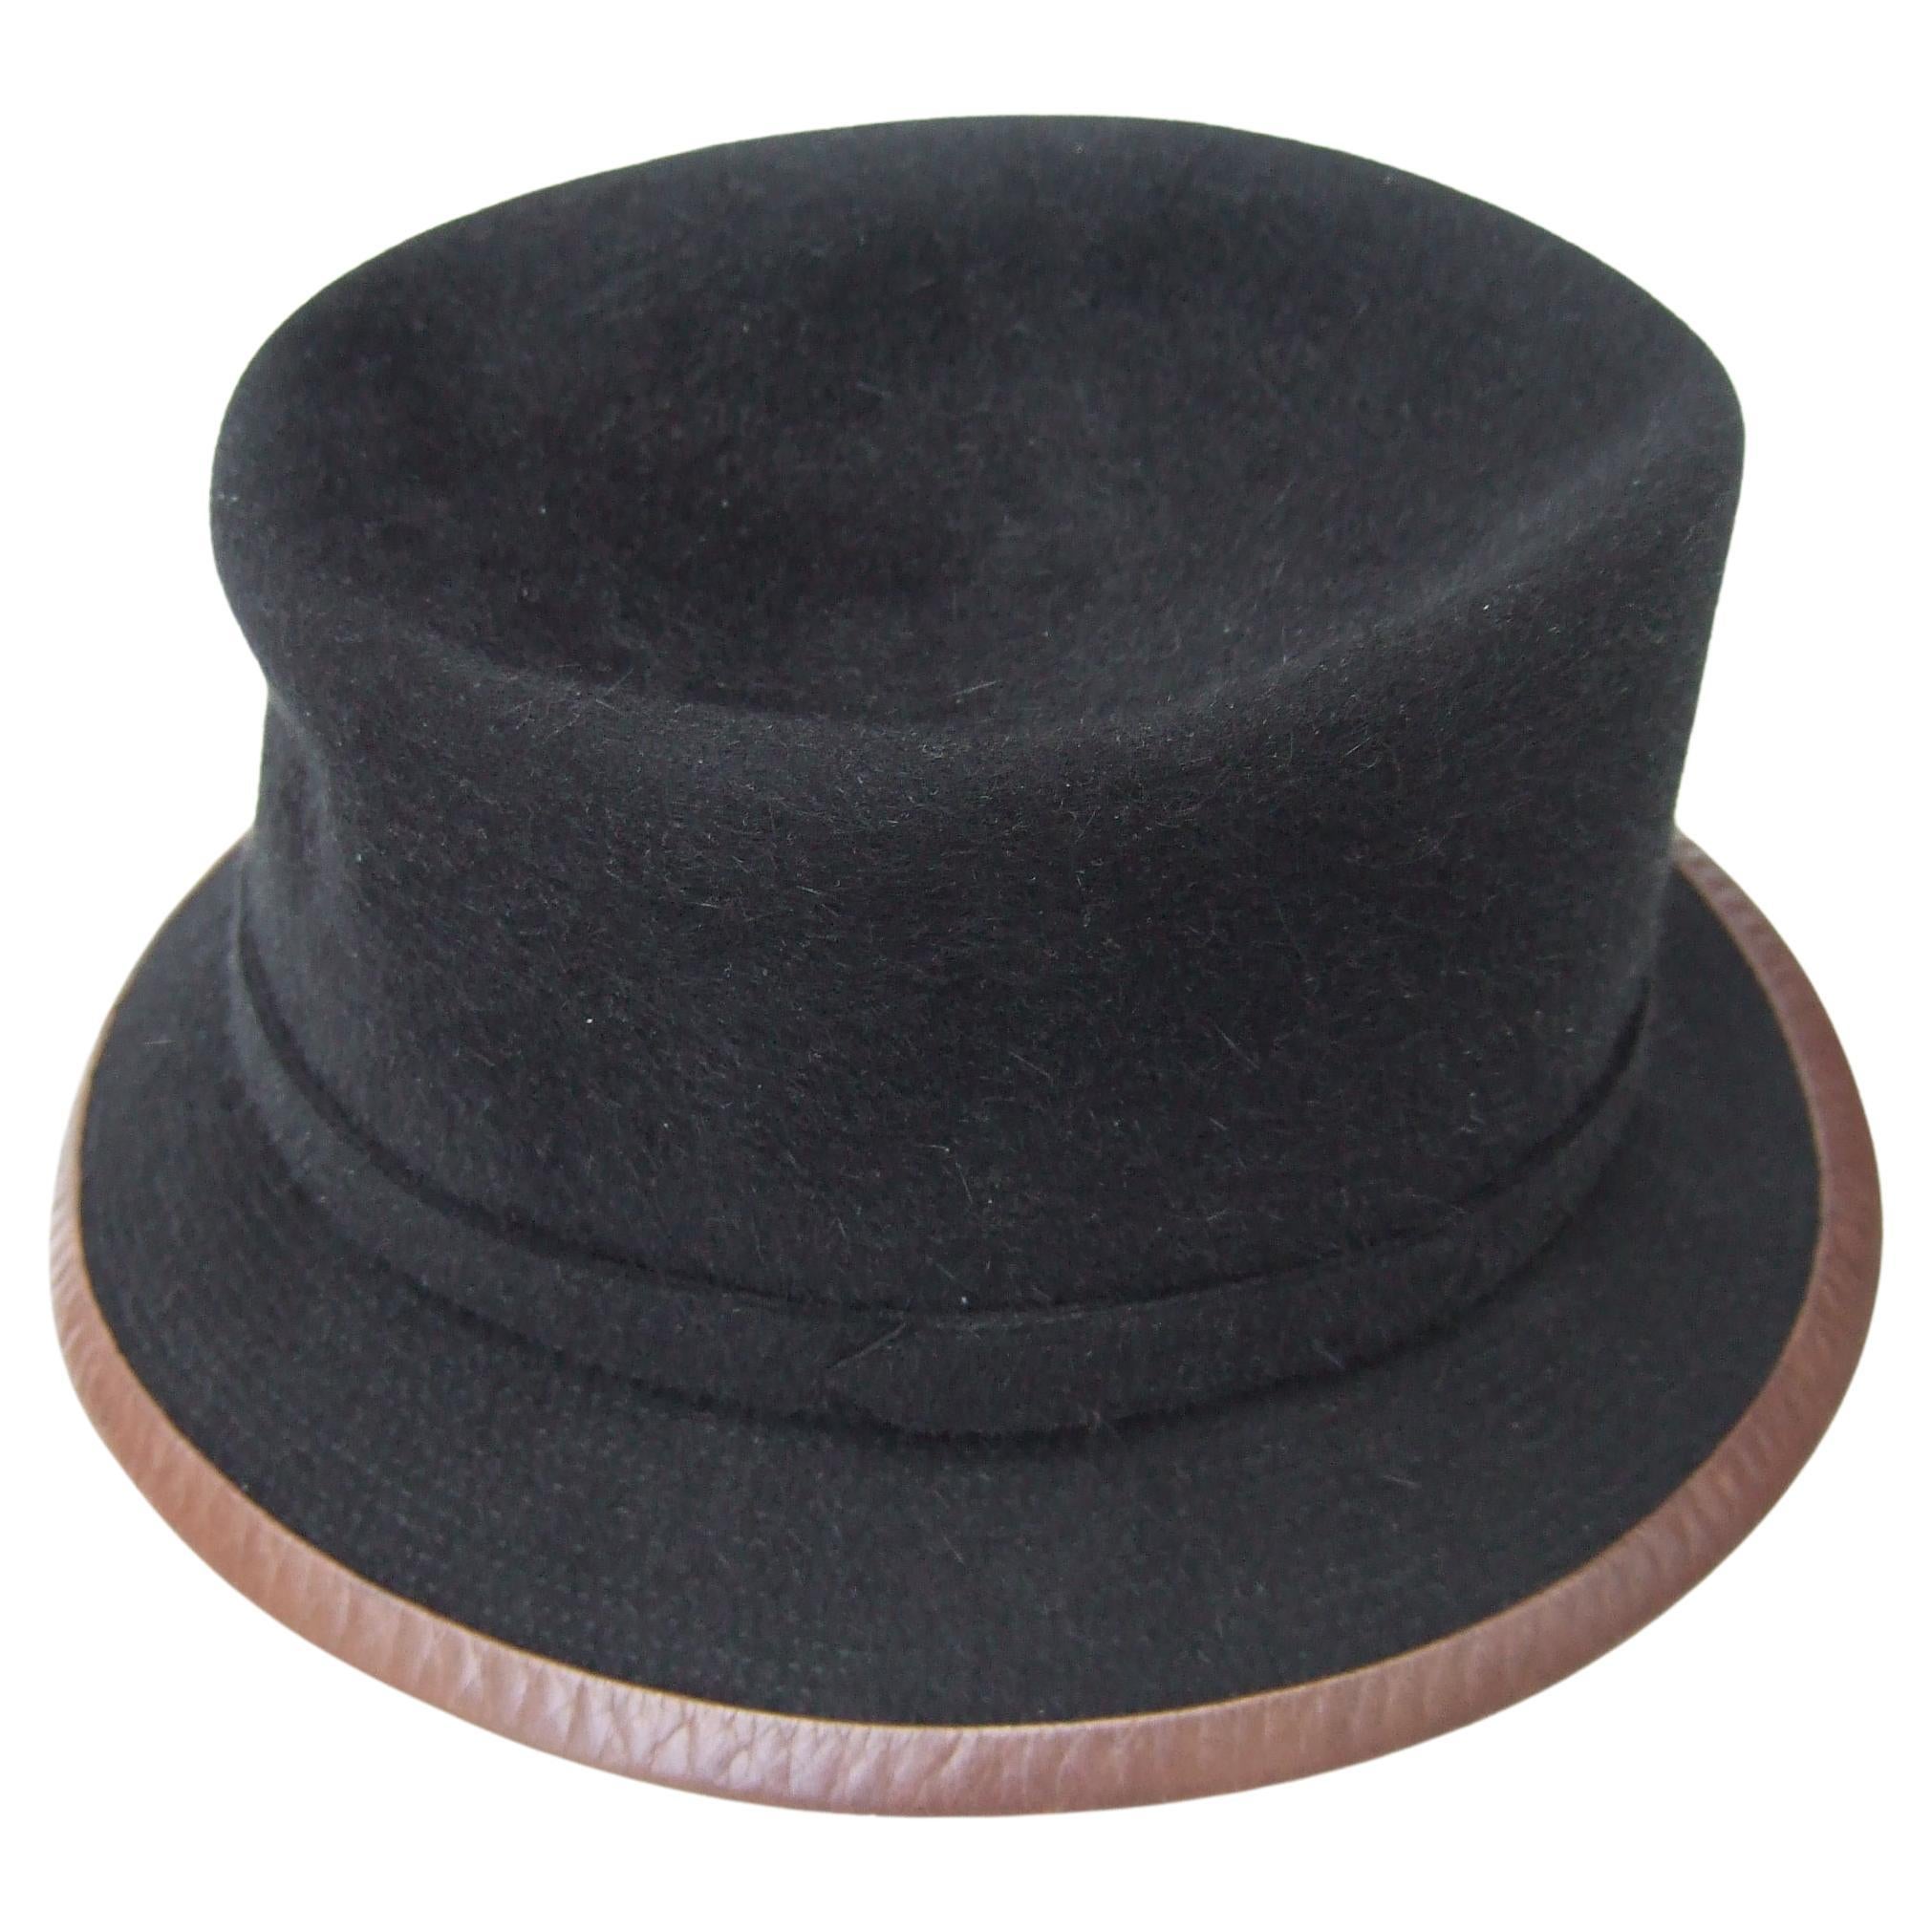 Hermes Paris Black Wool Leather Trim Hat Labeled Motsch Chapeaux Pour Hermes 